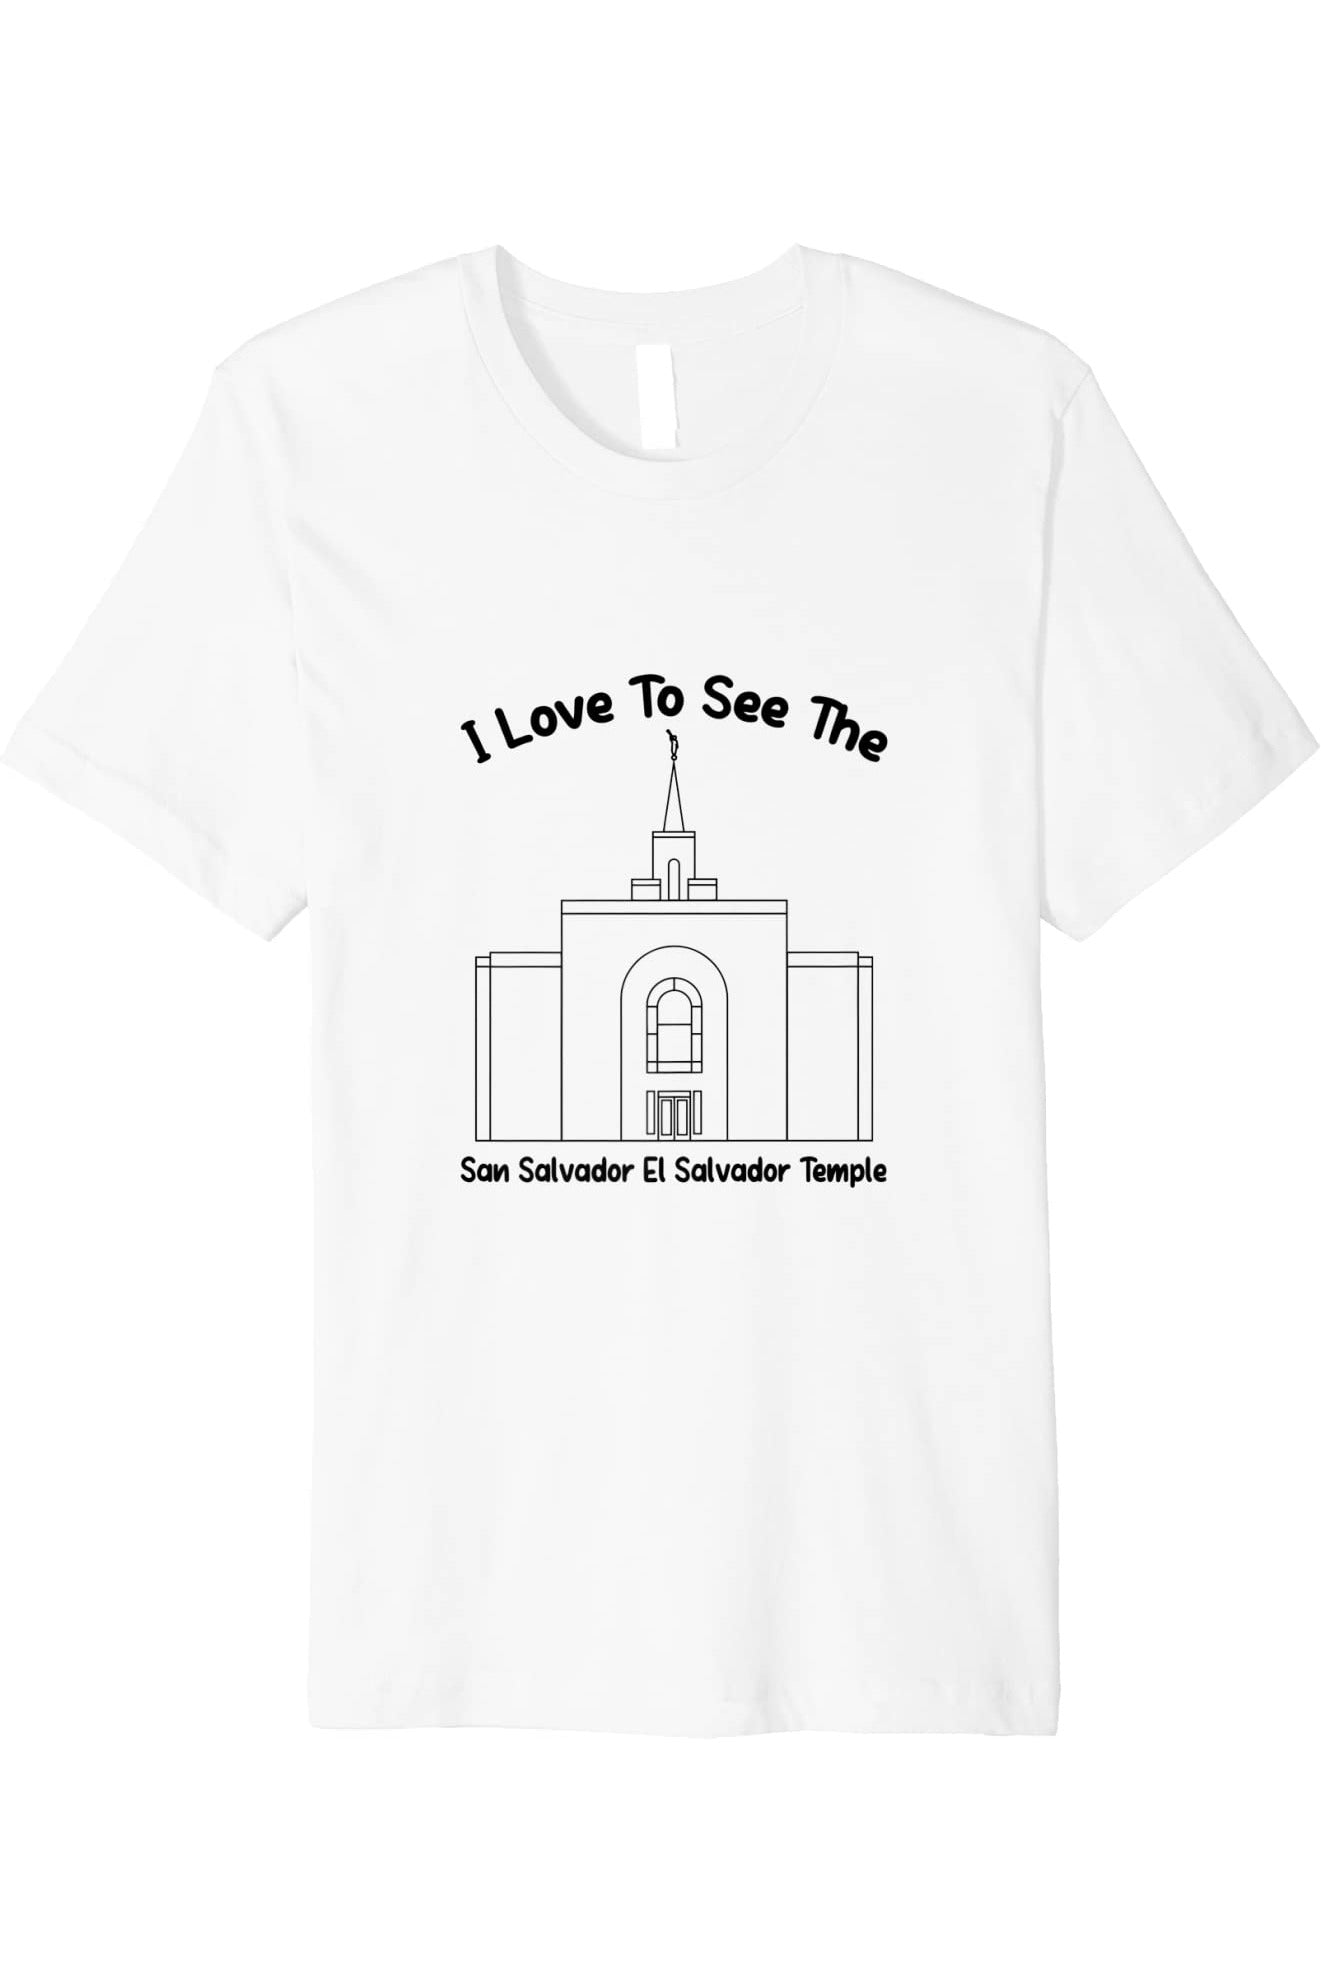 San Salvador El Salvador Temple T-Shirt - Premium - Primary Style (English) US